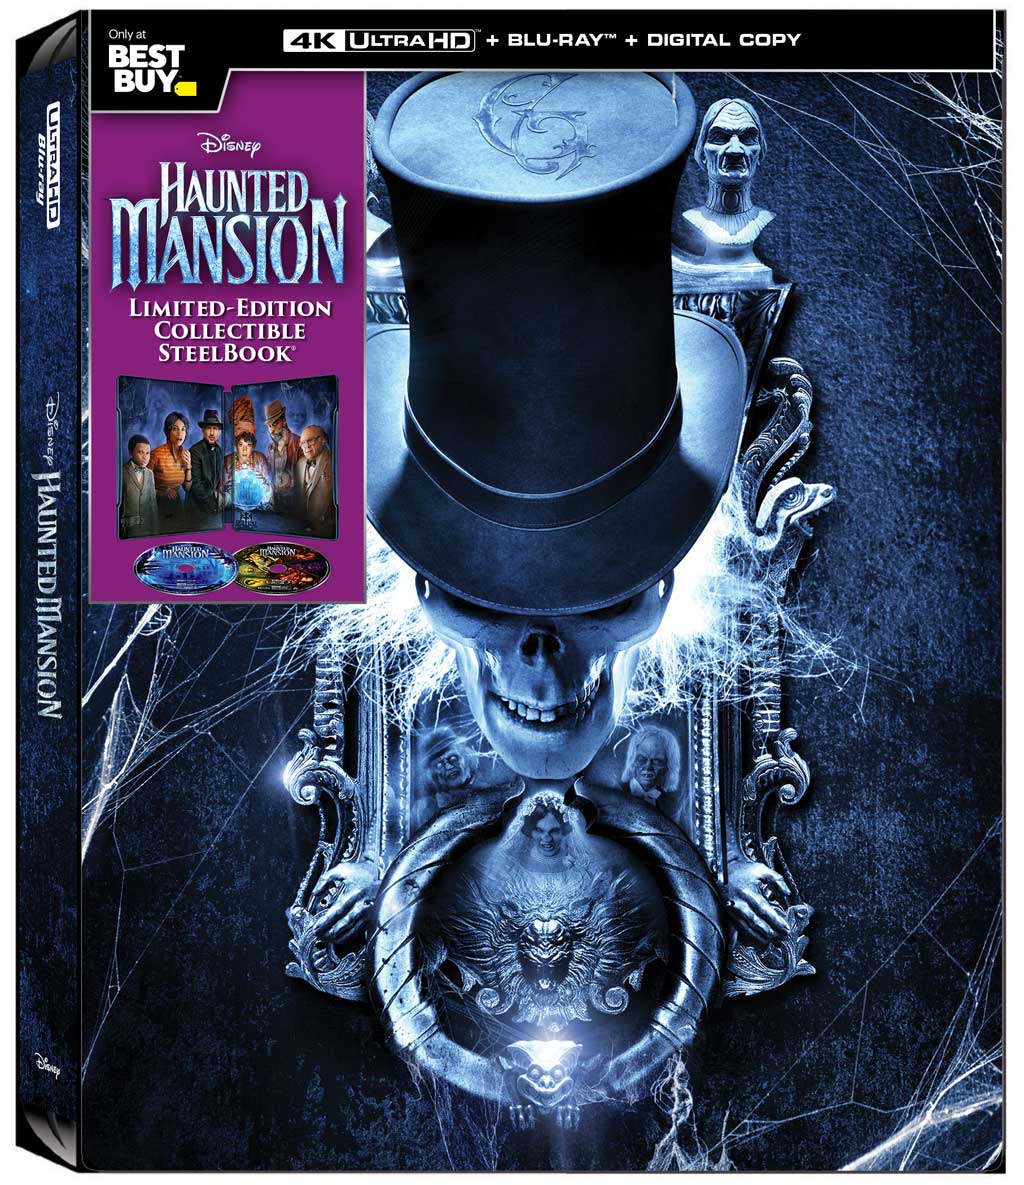 Haunted Mansion Best Buy 4K UHD Steelbook Closed